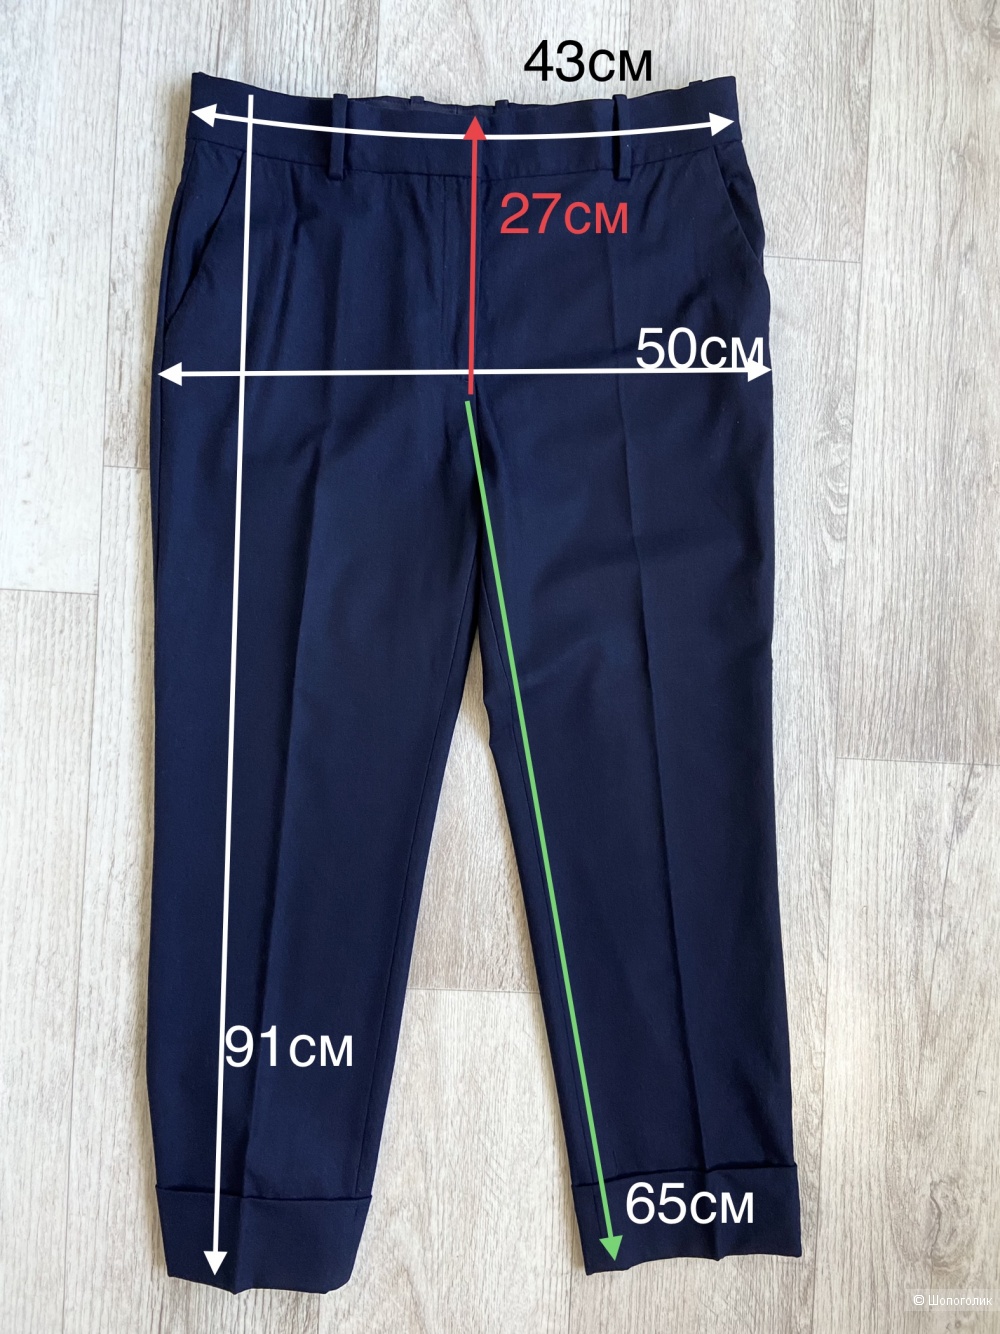 Cos брюки женские L (46-48)